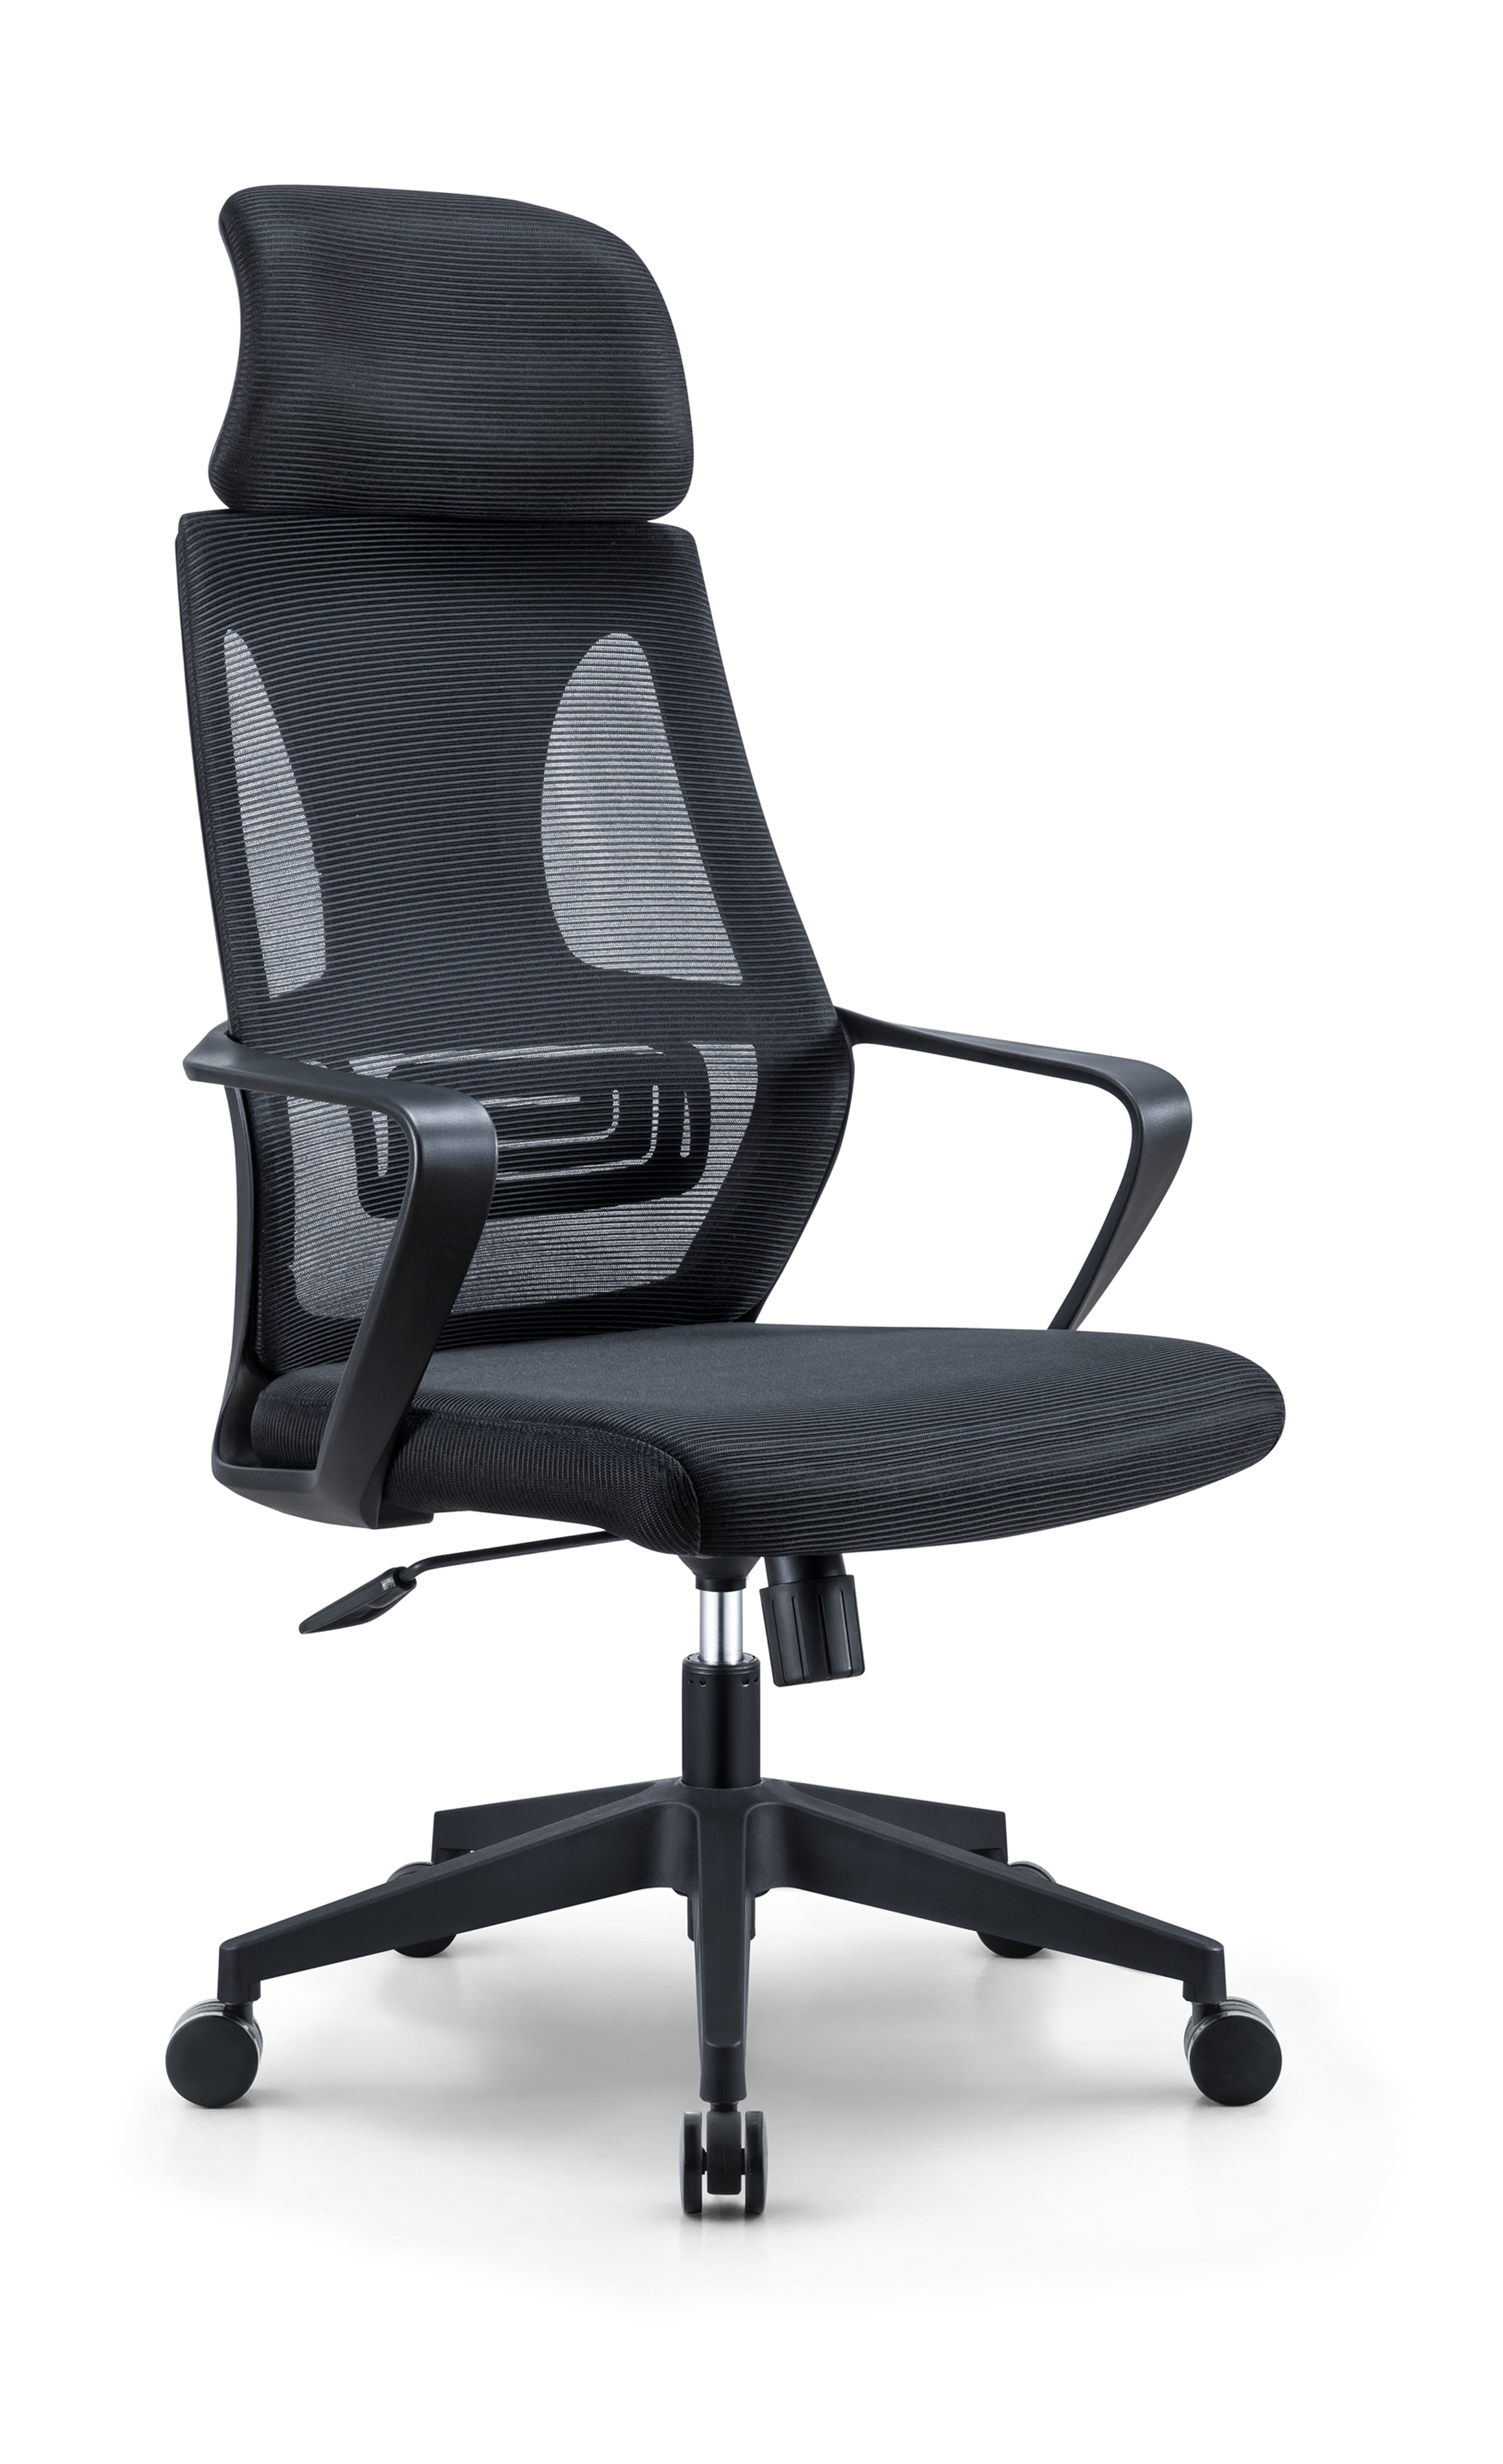 Newcity 544A Vente chaude moderne chaise en maille à dossier haut meilleur prix chaise en maille appui-tête réglable chaise en maille personnel chaise pivotante fournisseur de mobilier de bureau Foshan Chine